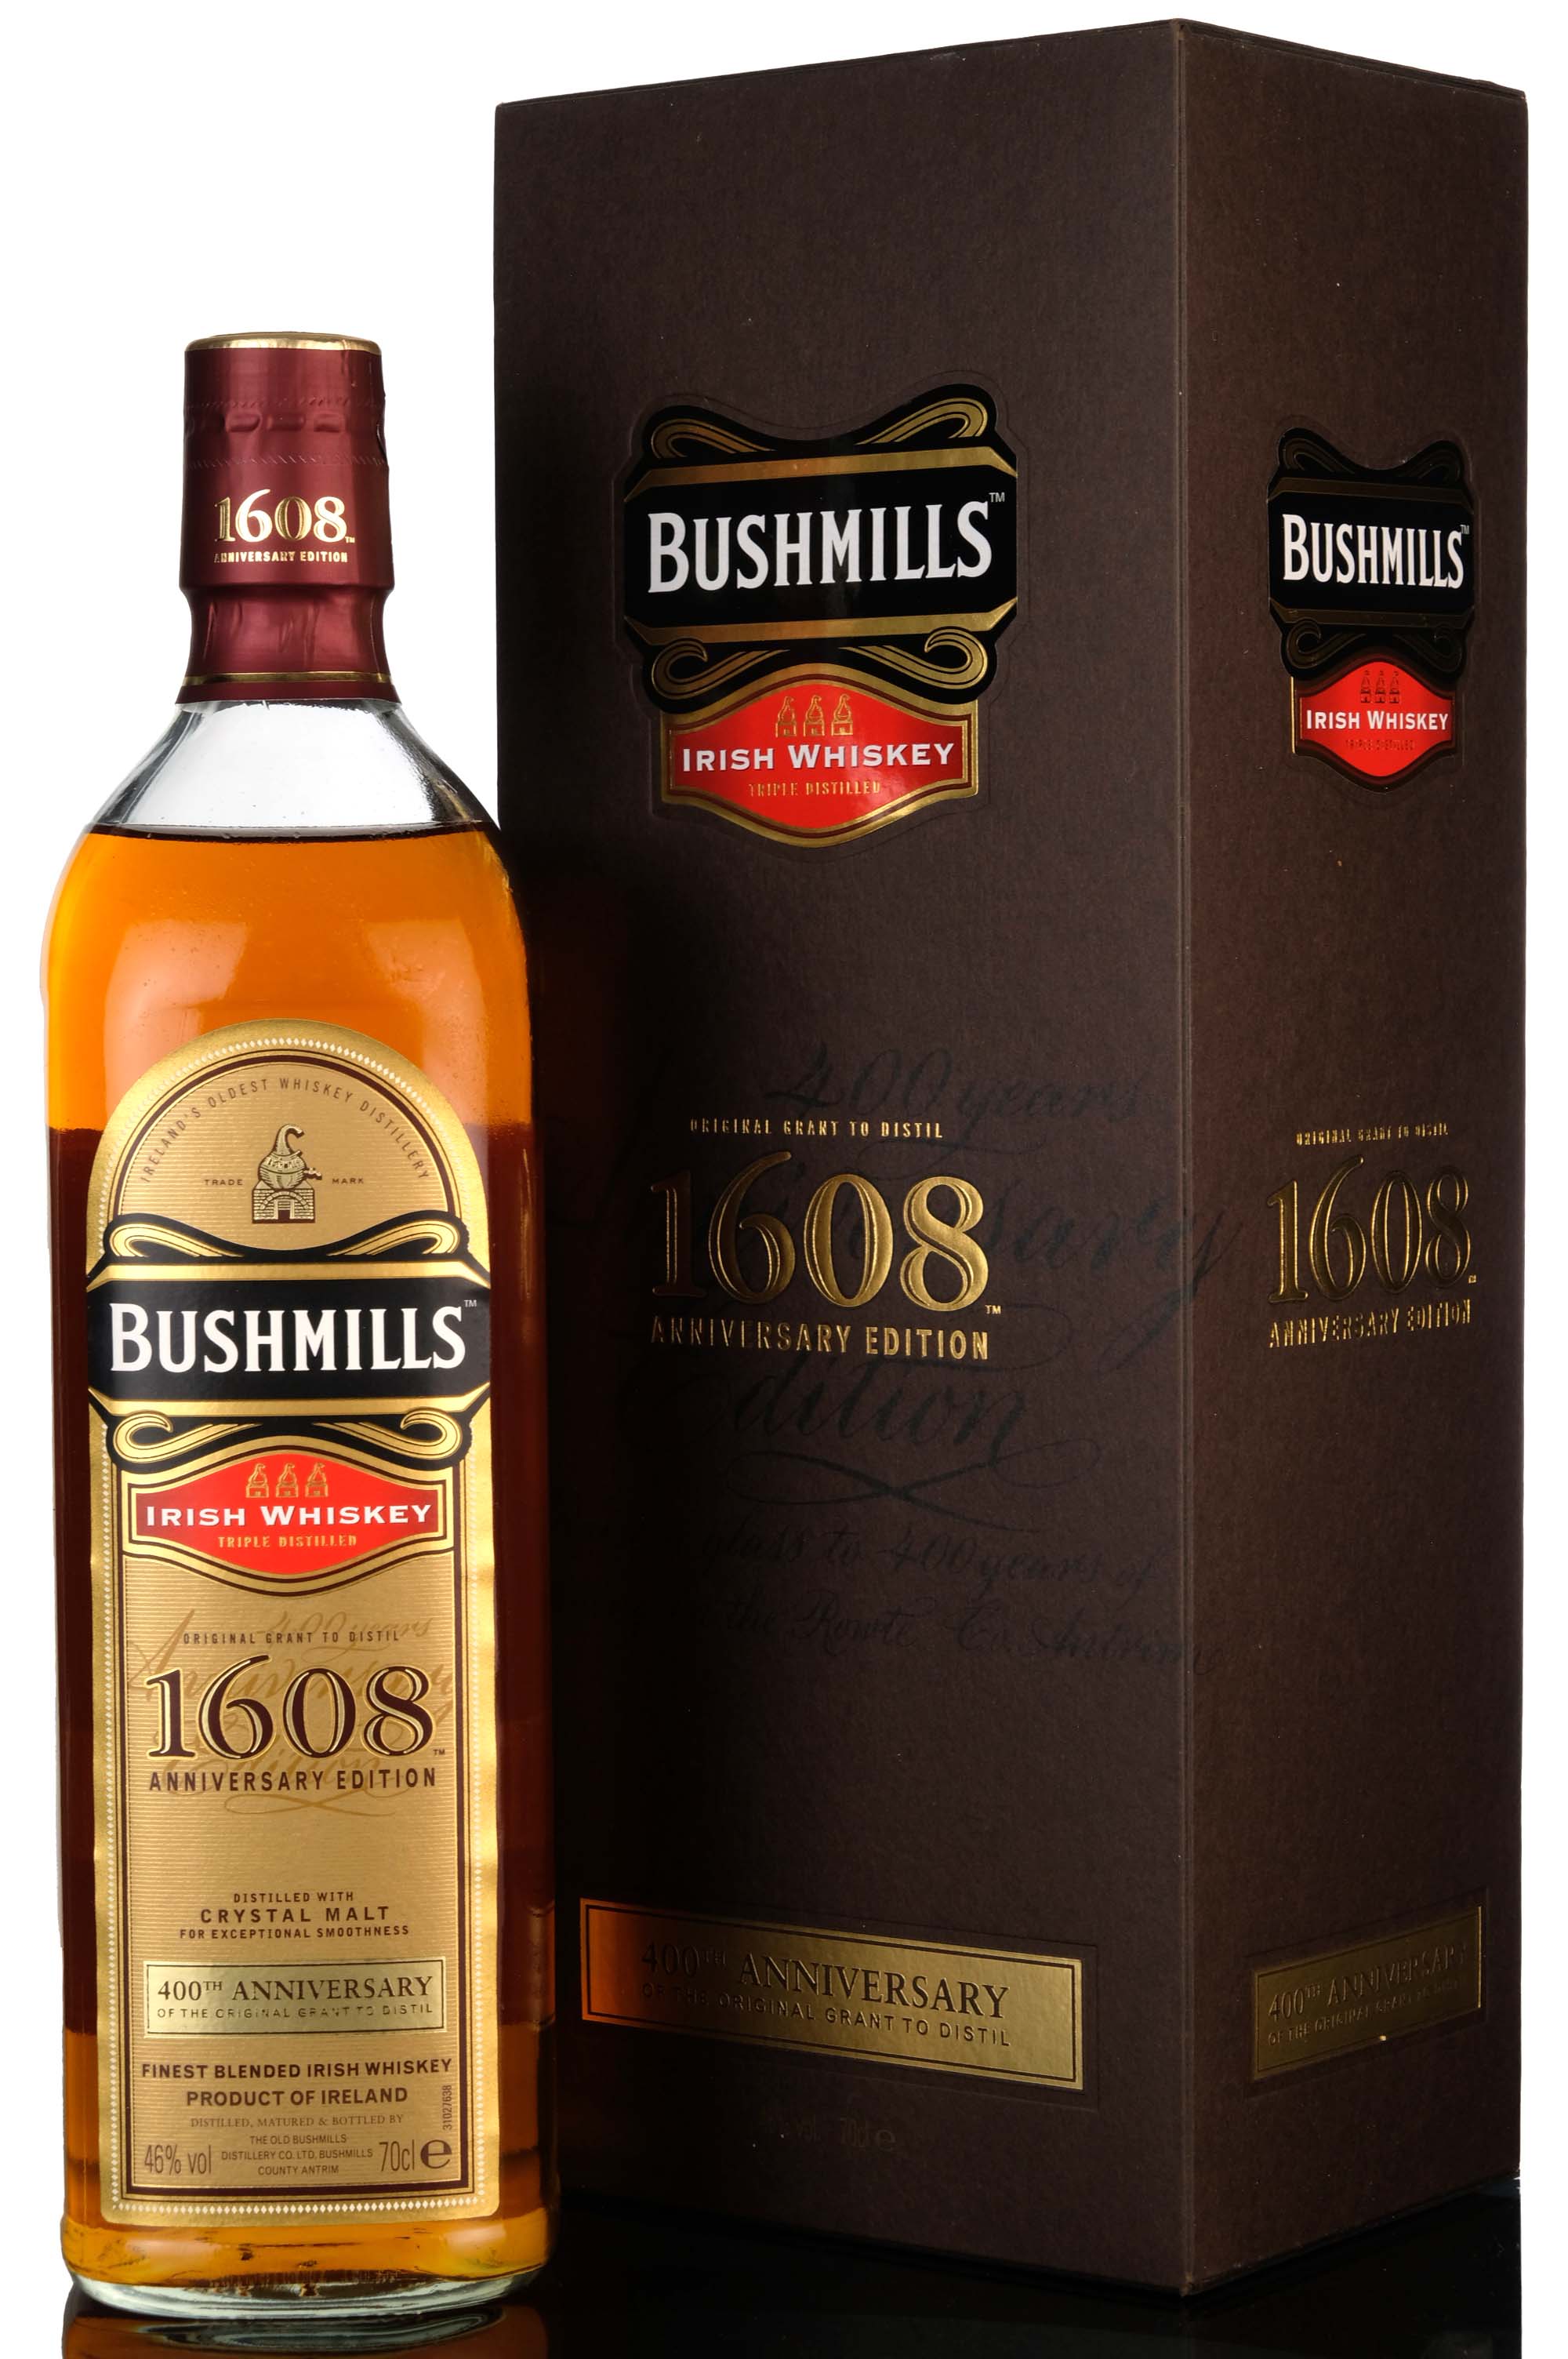 Bushmills 1608 400th Anniversary Of The Original Grant To Distill - 2008 Release